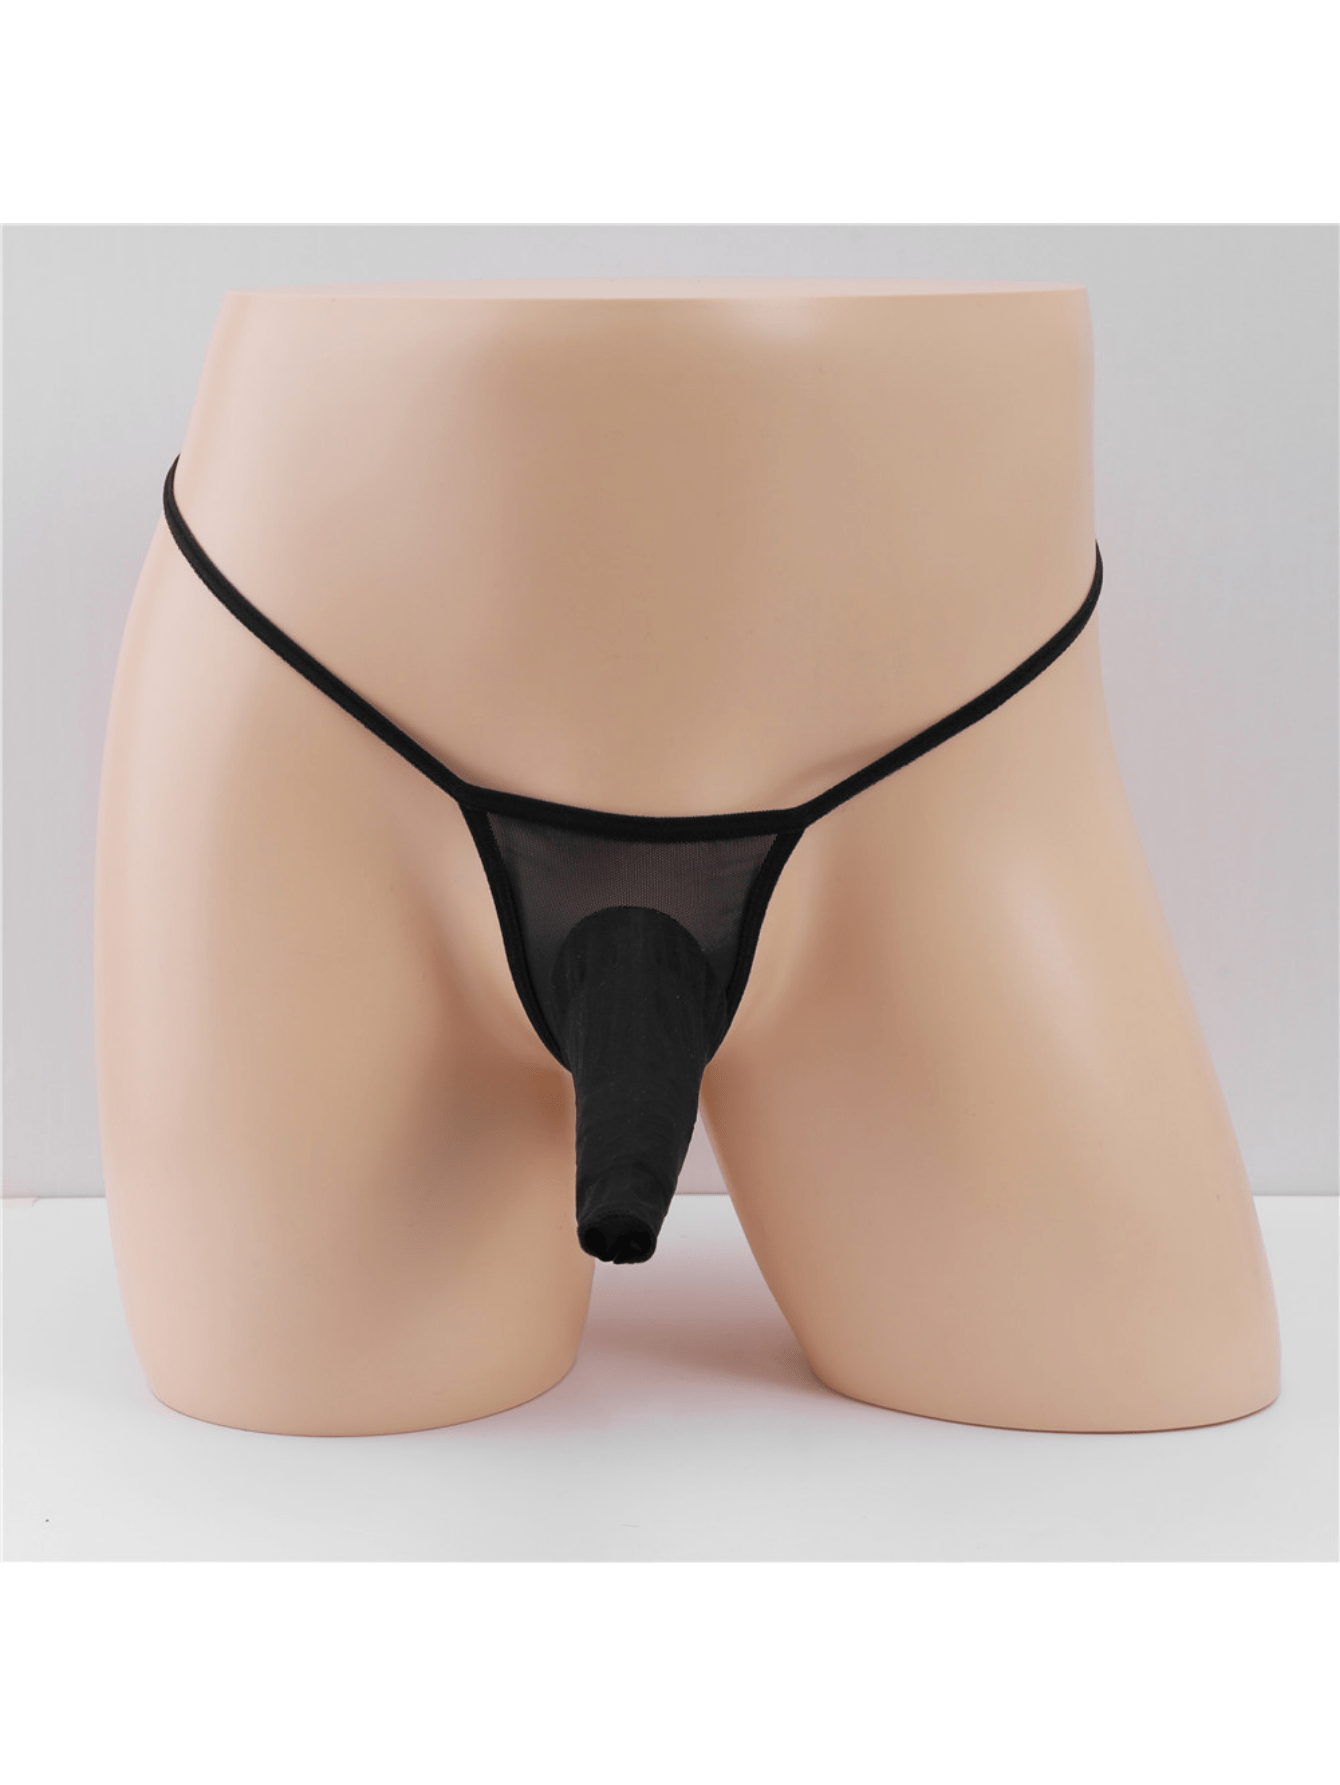 Silk G-string Briefs Thongs Underwear Lingerie